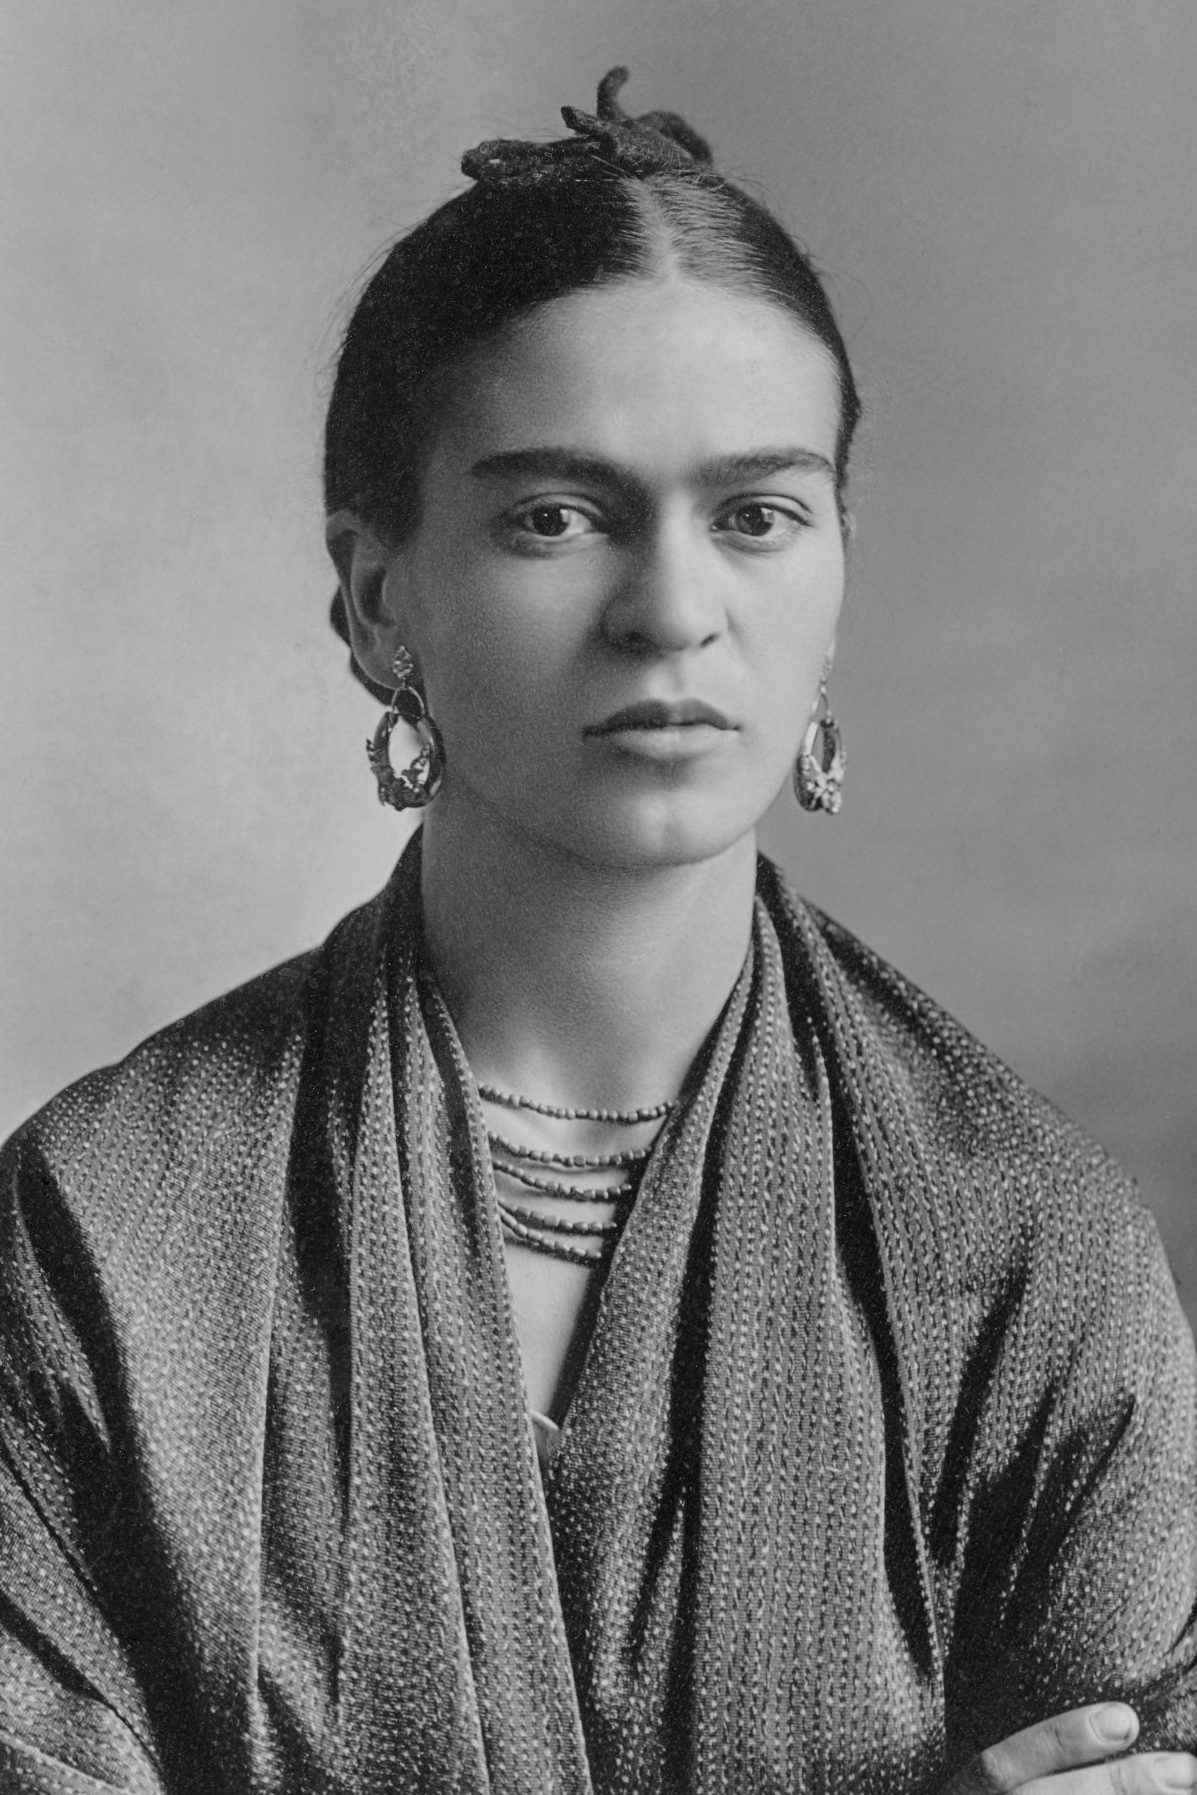 auteur Frida Kahlo de la citation Rien n'est absolu, tout est changement, tout est mouvement, tout est révolution, tout s'envole et s'en va.